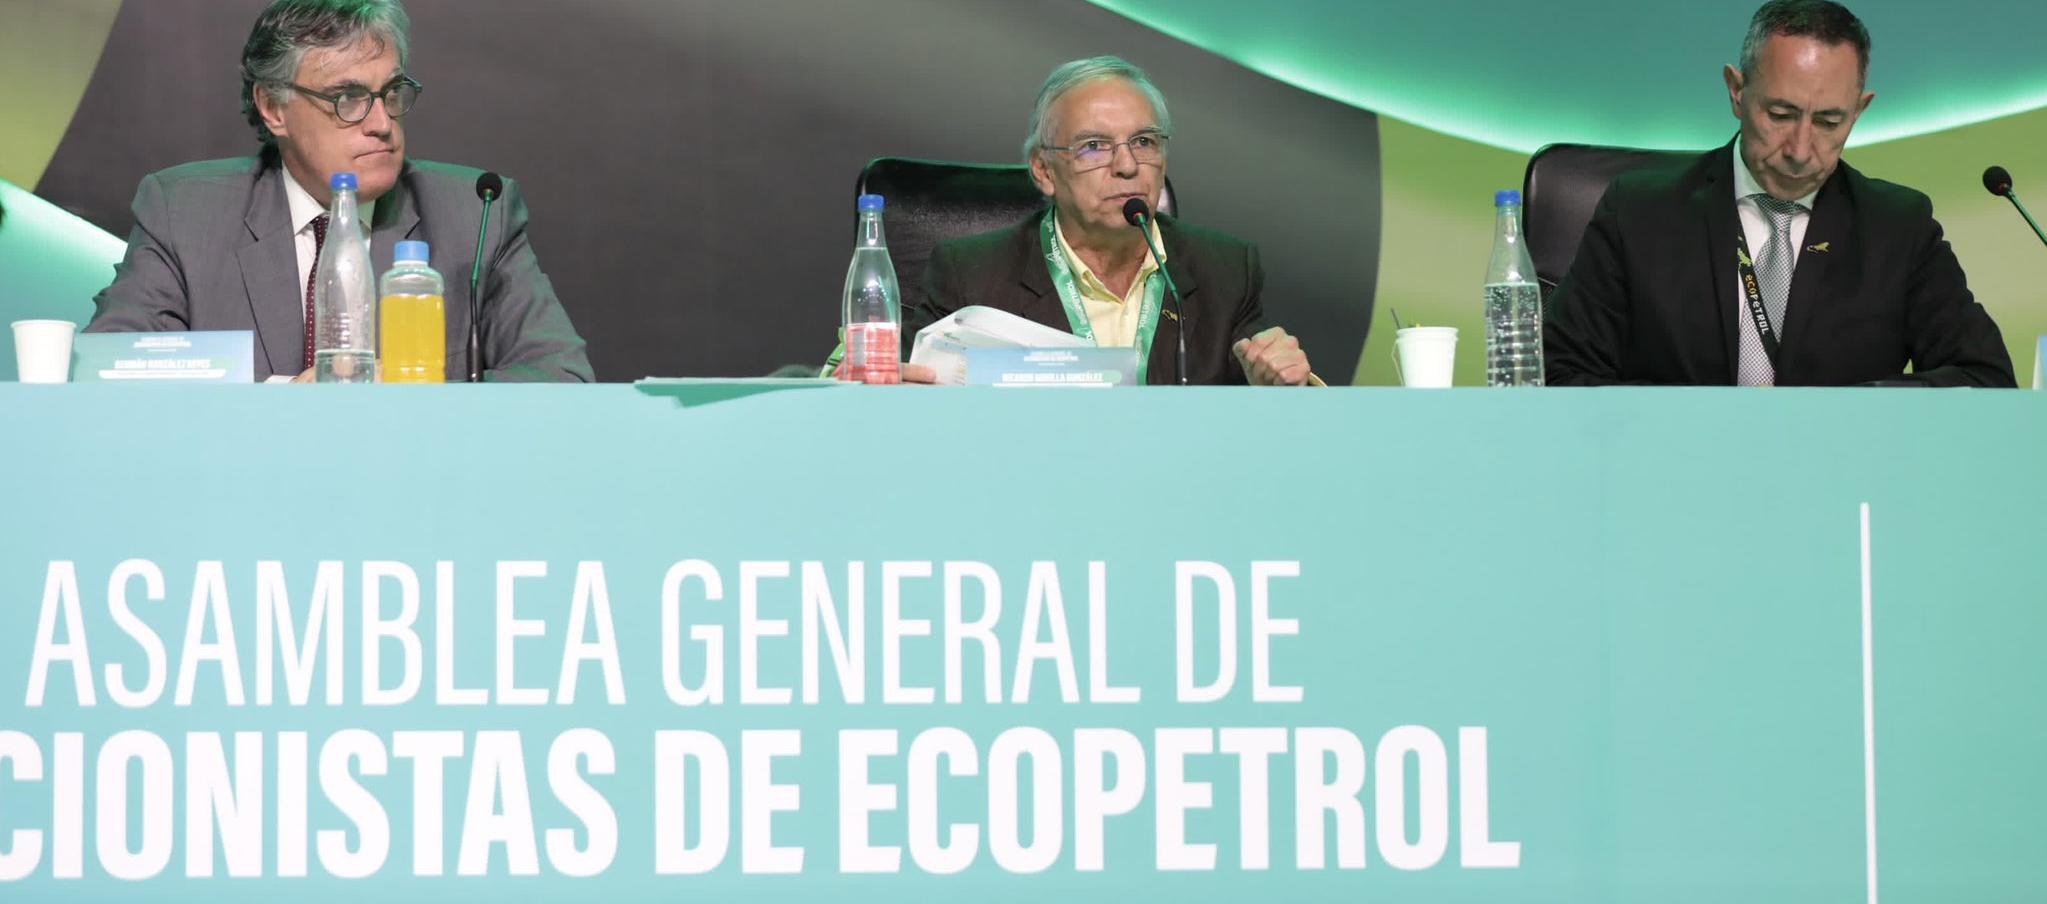 El ministro de Hacienda, Ricardo Bonilla, presidente de la Asamblea de Accionistas, en la reunión del viernes